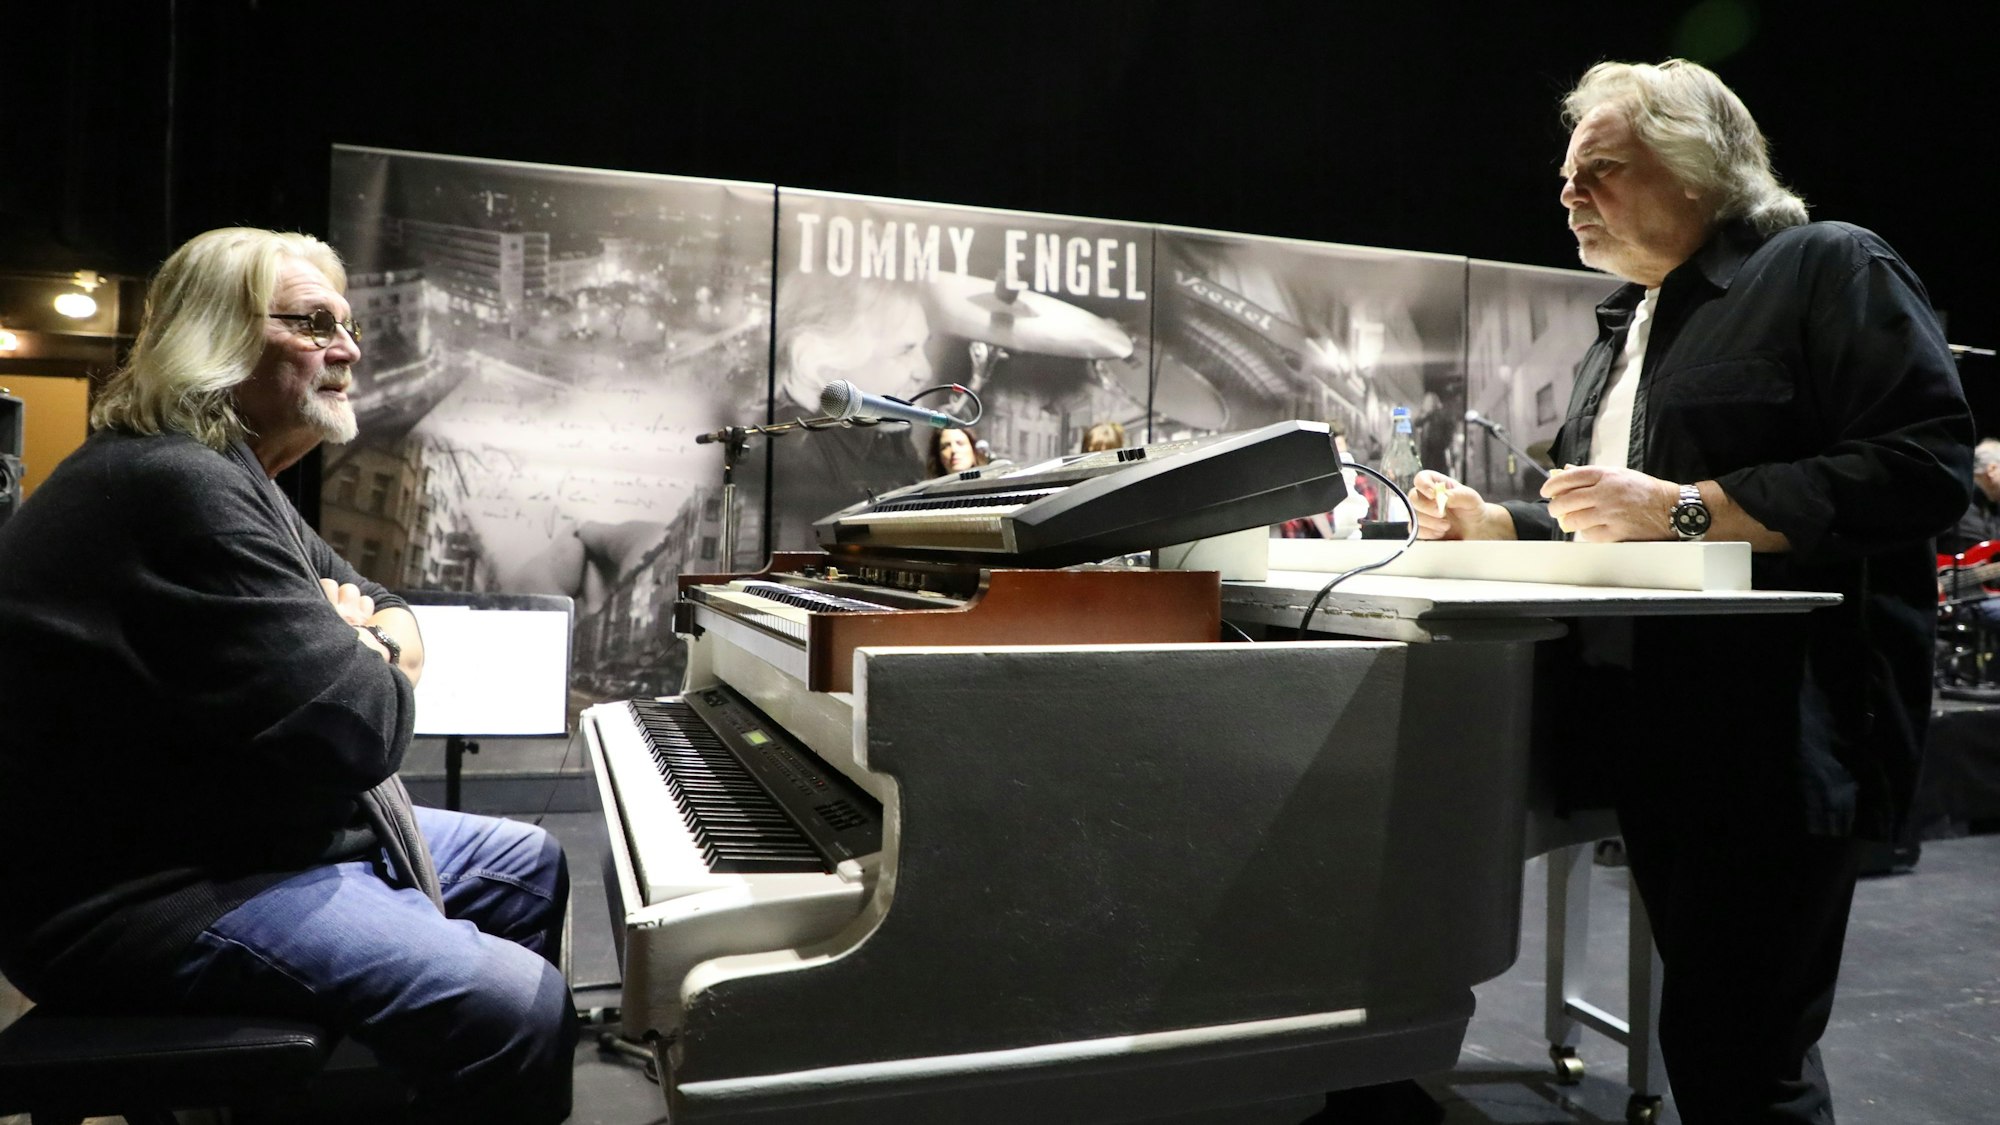 Jürgen Fritz sitzt am Piano, Tommy Engels steht am Flügel und spricht mit ihm.